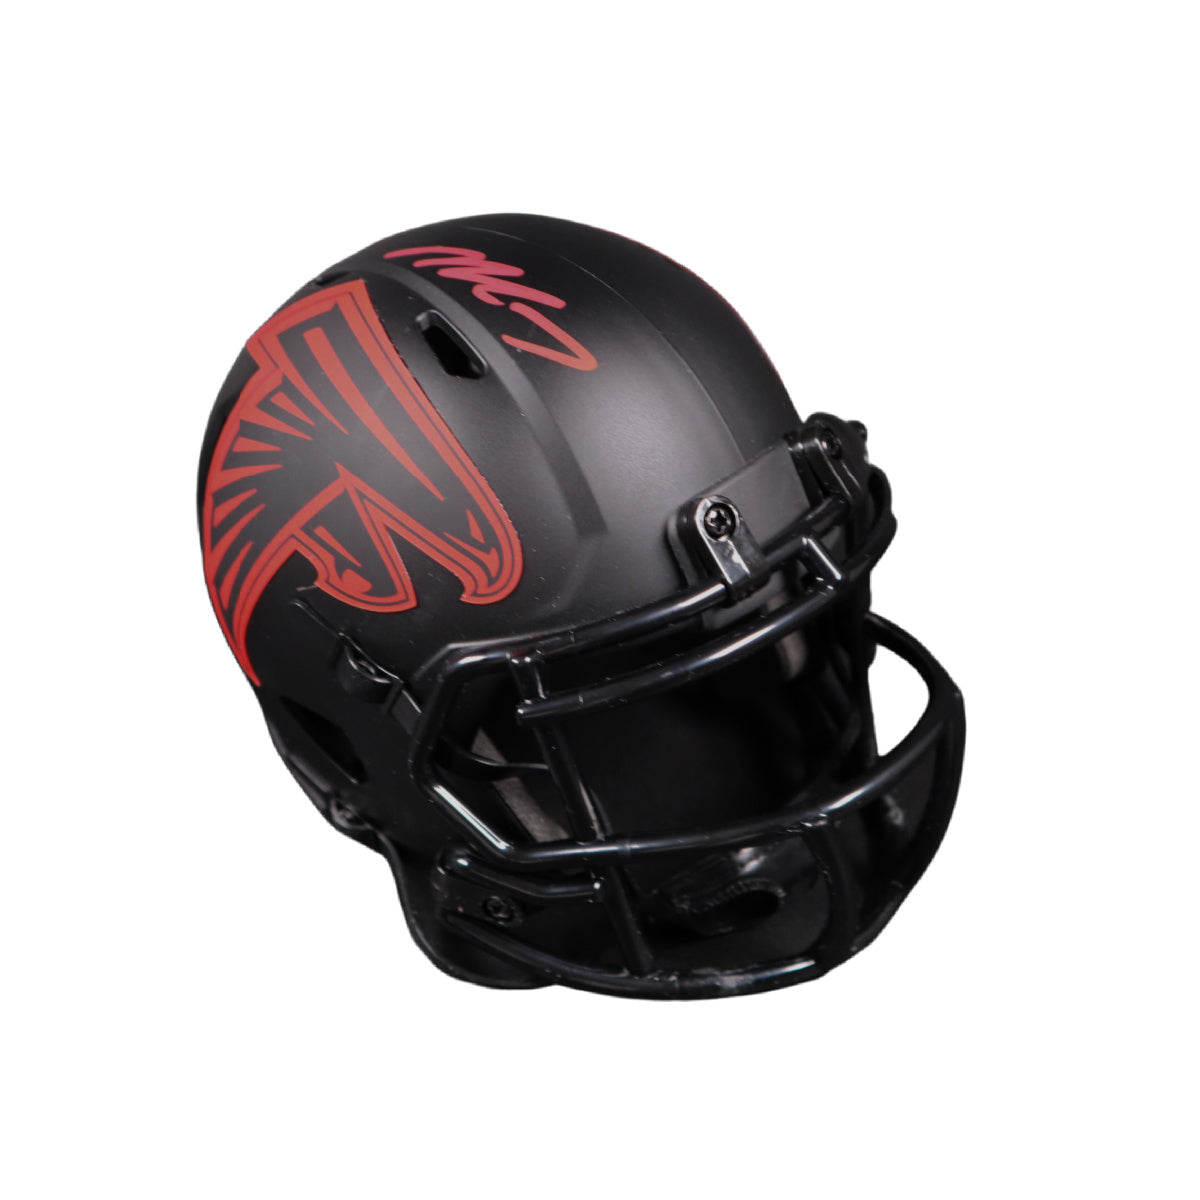 Michael Vick Atlanta Falcons Signed Mini Helmet Autographed BAS